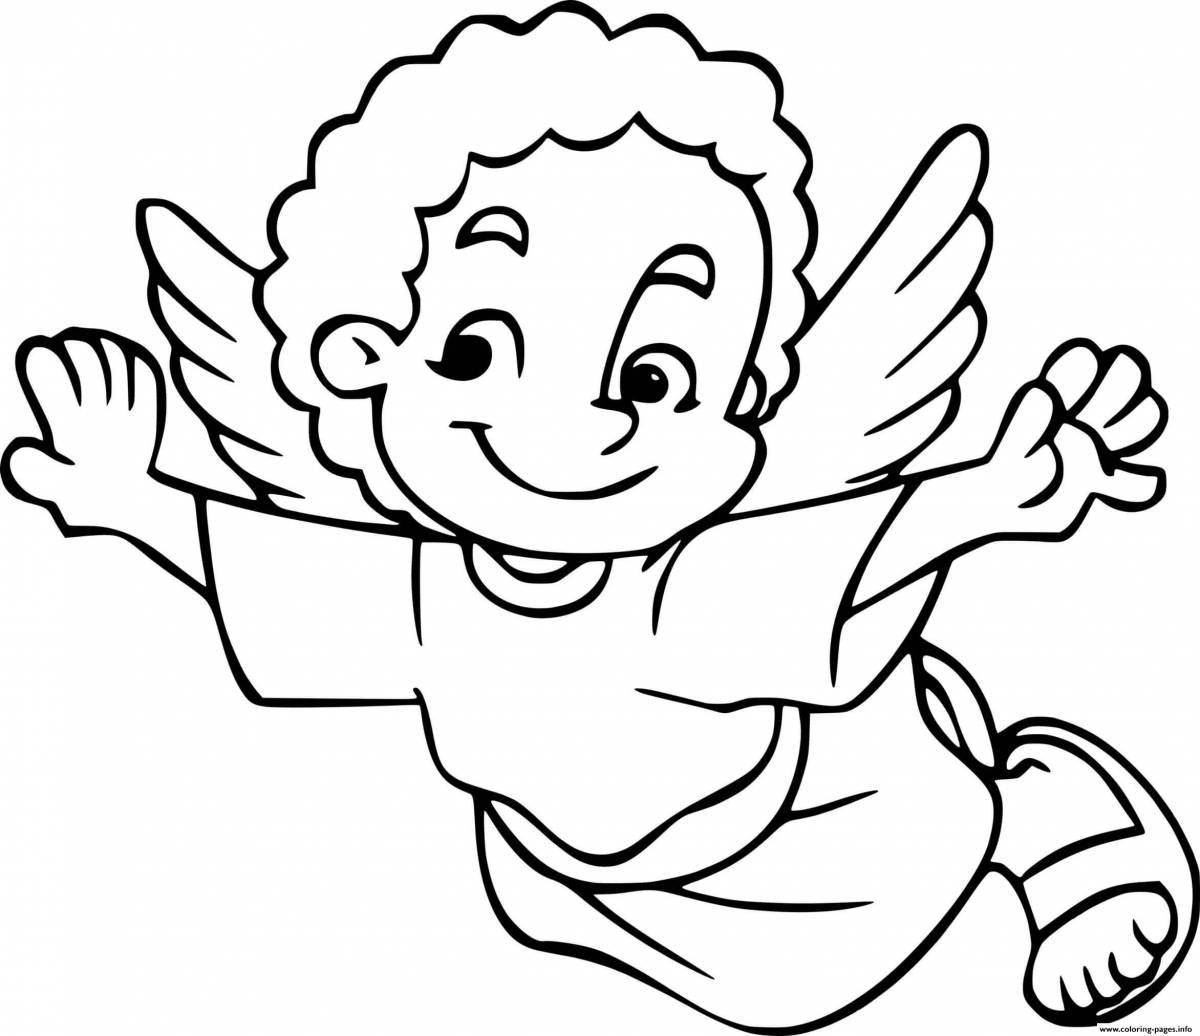 Baby angel precious coloring book